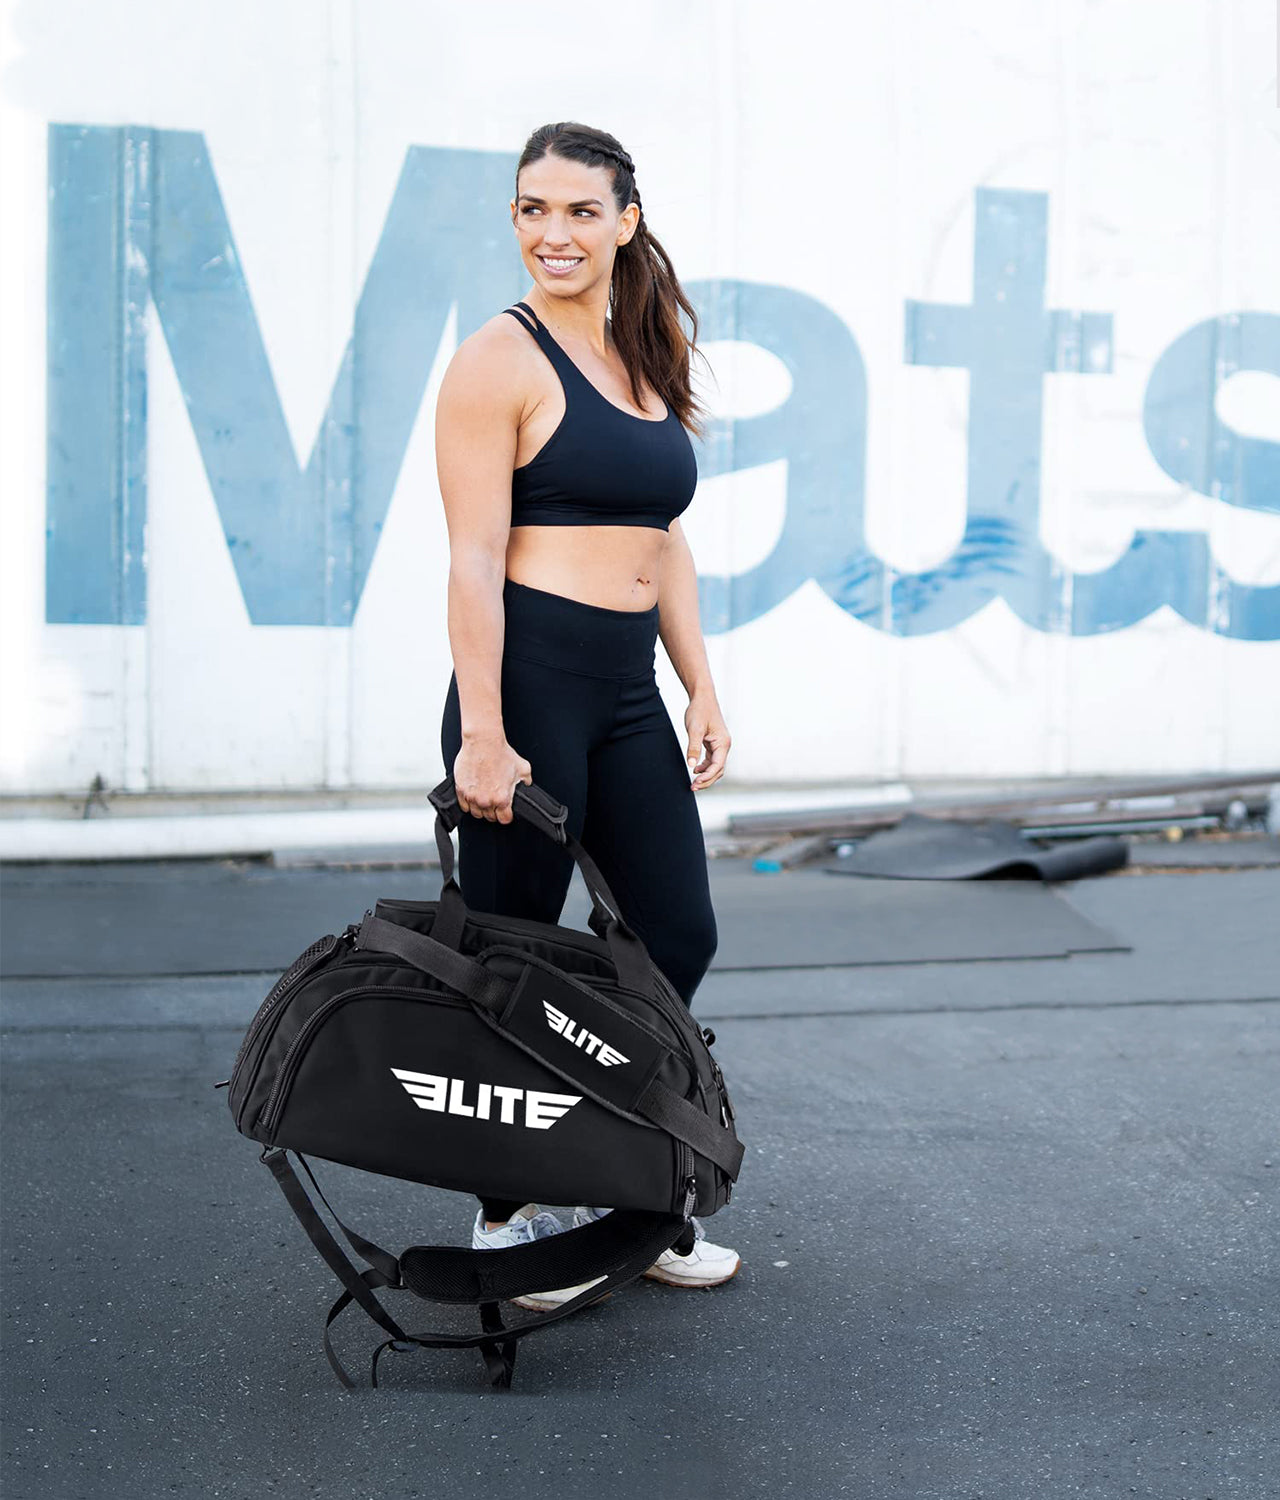 Elite Sports Warrior Black Large Duffel MMA Gear Gym Bag